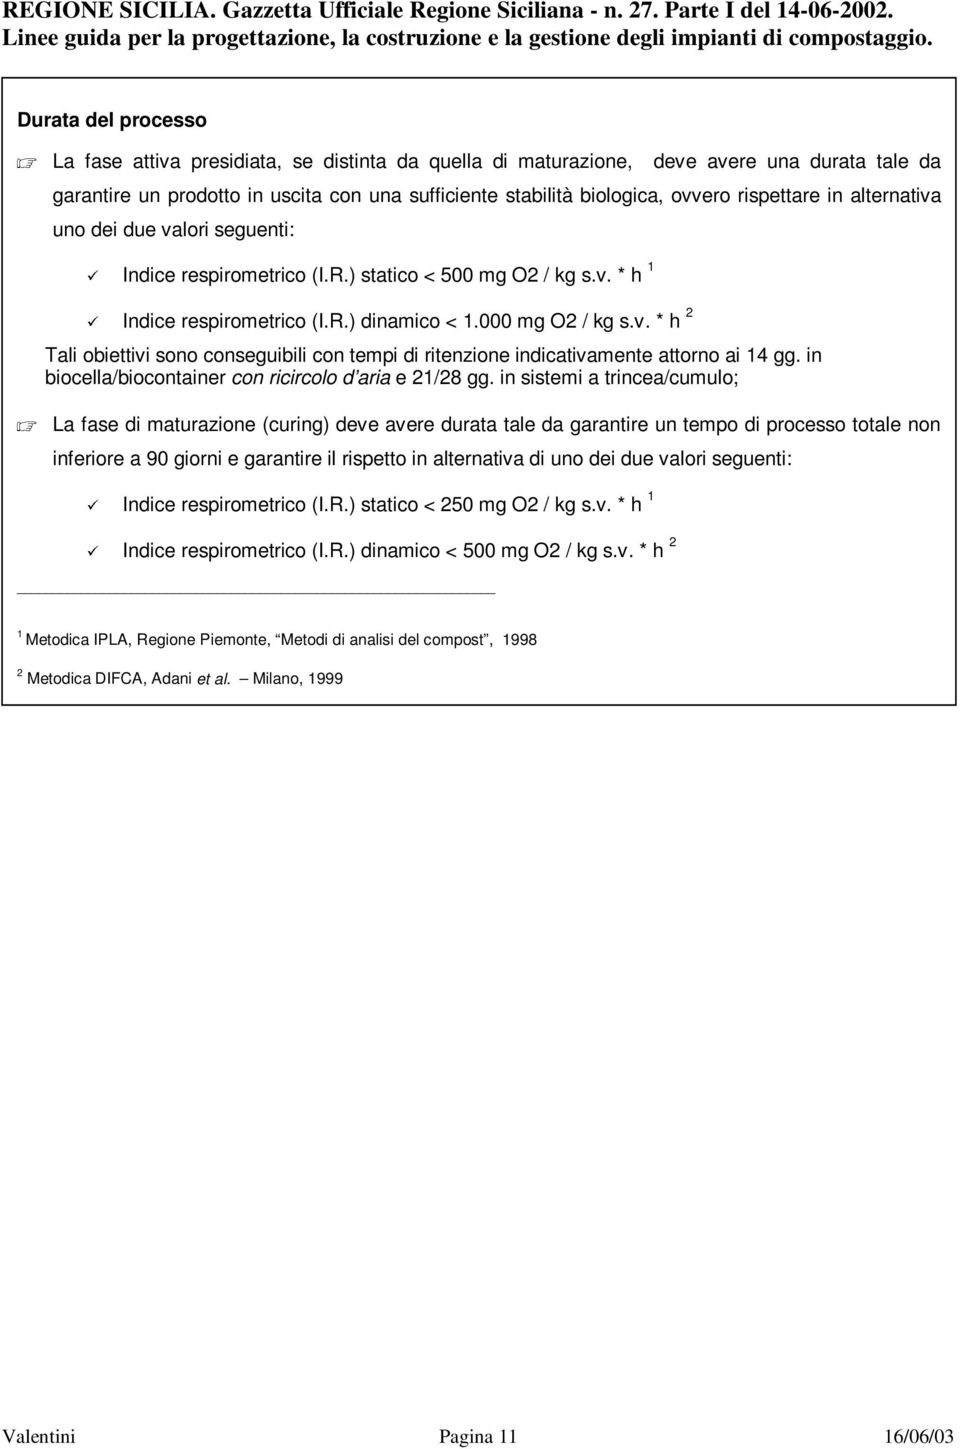 rispettare in alternativa uno dei due valori seguenti: Indice respirometrico (I.R.) statico < 500 mg O2 / kg s.v. * h 1 Indice respirometrico (I.R.) dinamico < 1.000 mg O2 / kg s.v. * h 2 Tali obiettivi sono conseguibili con tempi di ritenzione indicativamente attorno ai 14 gg.